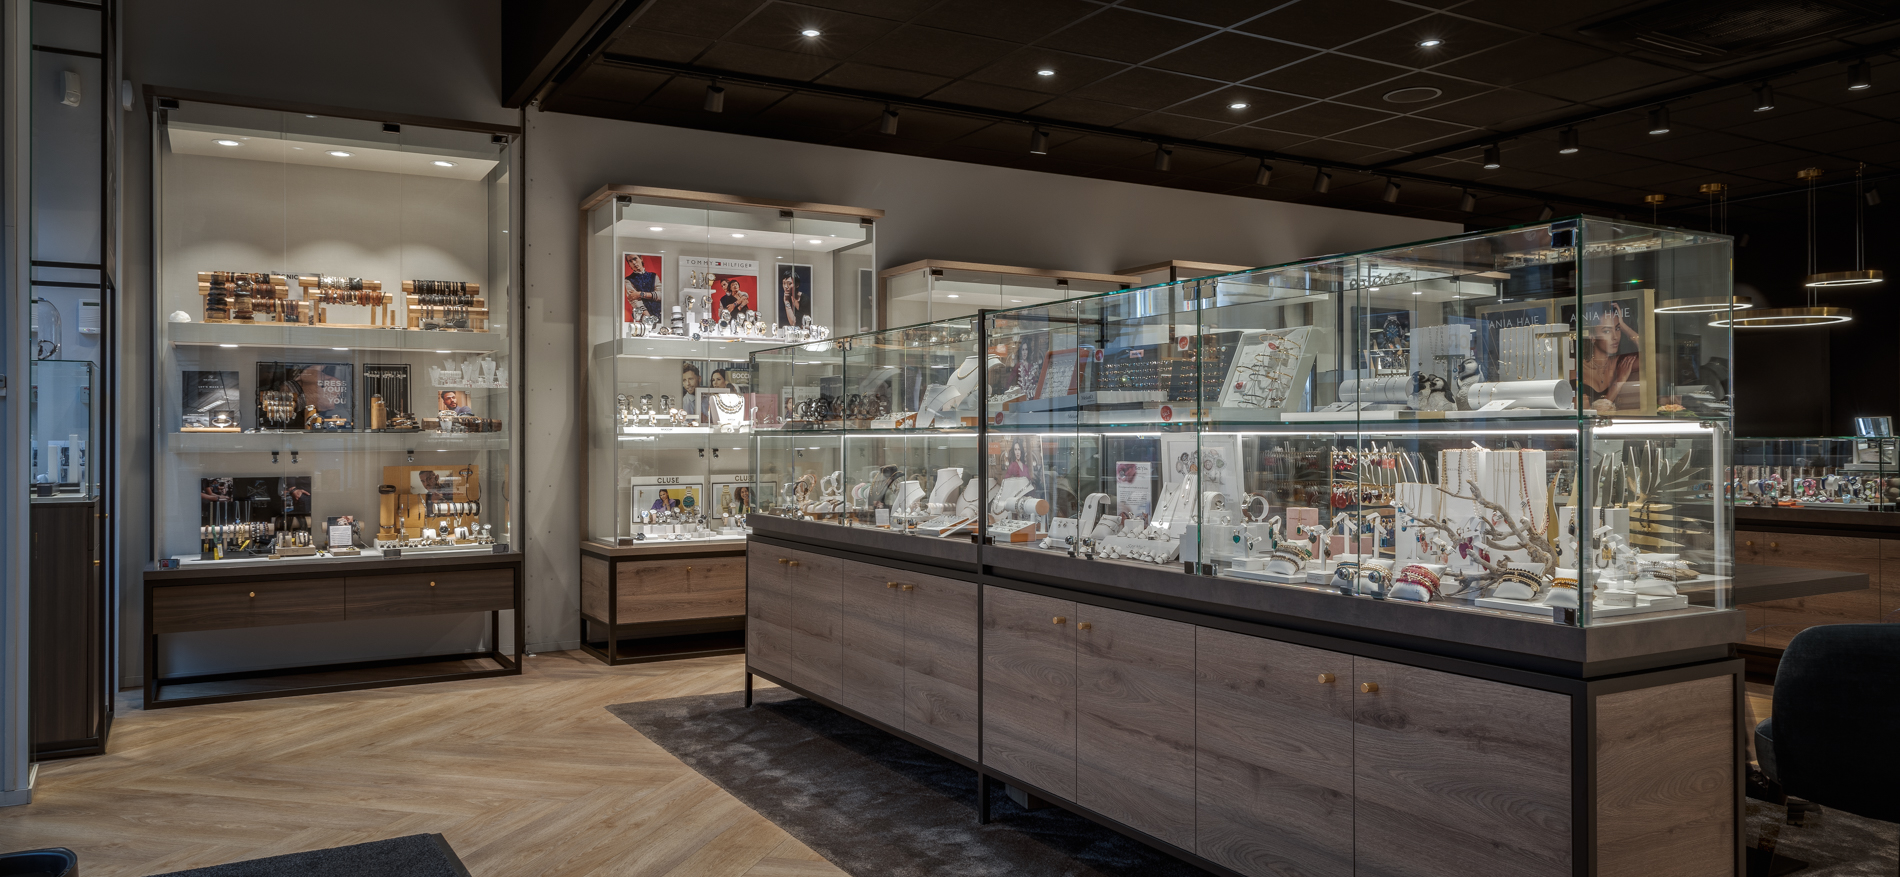 Jeweler Maas | Steenwijk (NL) - 